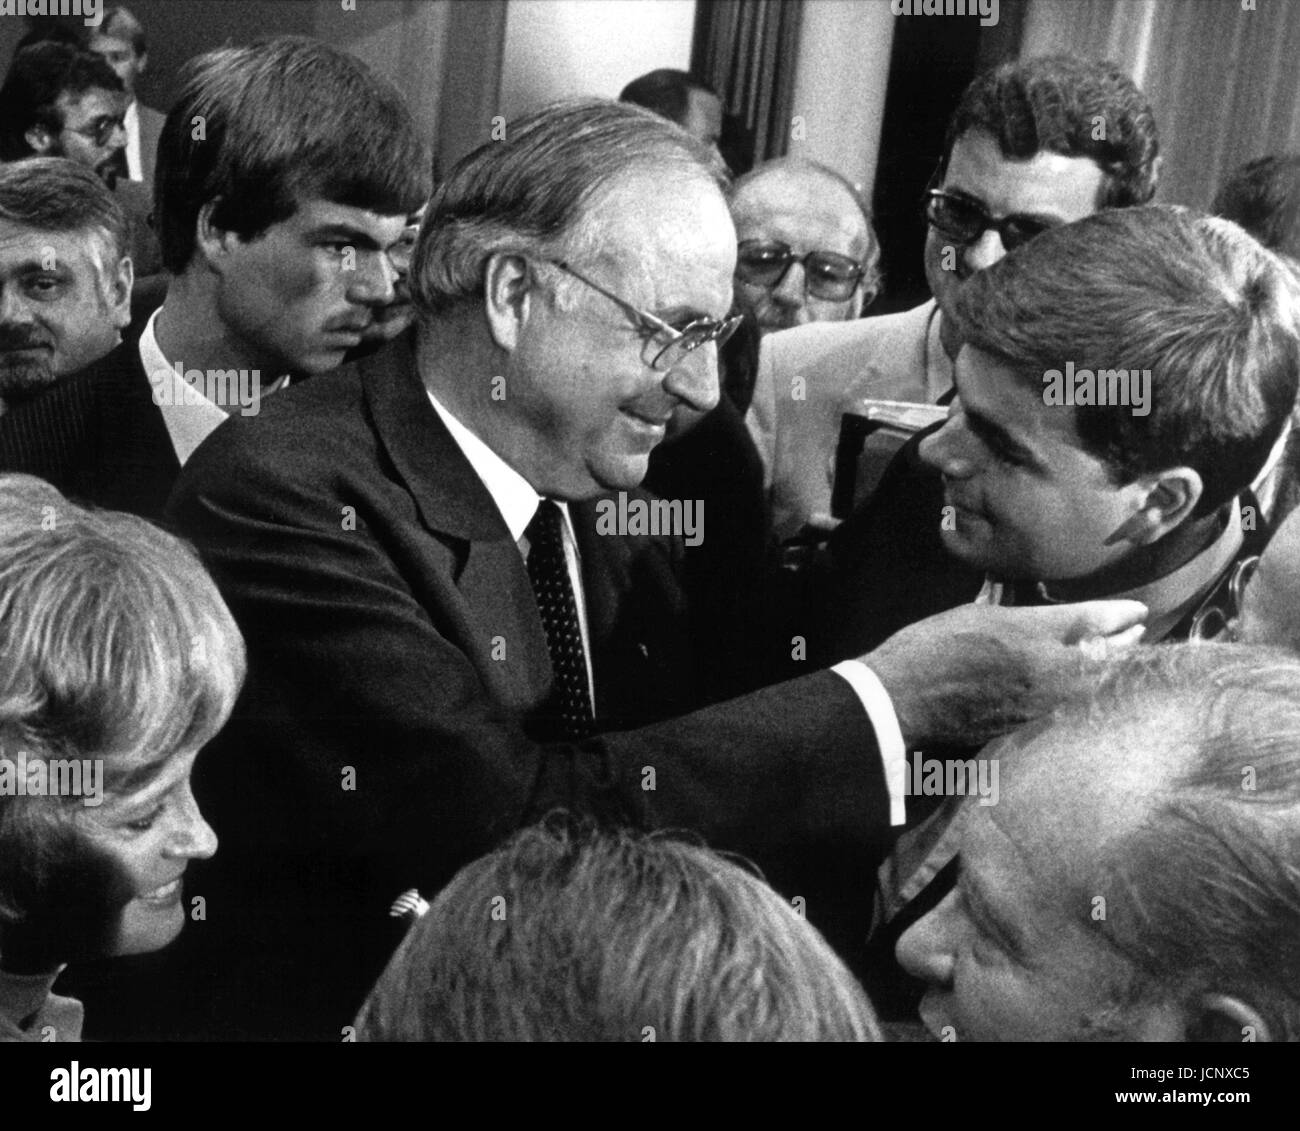 (Dpa) file - il neo eletto Cancelliere Helmut Kohl abbracci felicemente il suo figlio Walter (R) a Bonn in Germania Ovest, 1 ottobre 1982. In background: suo figlio Pietro indietro (L) e sua moglie Hannelore. Quel giorno, il cancelliere tedesco Helmut Schmidt è stato deposto mediante un costruttivo voto di sfiducia nel Bundestag. 249 fuori di 495 membri del Parlamento aveva votato per Kohl, sette in più del necessario per la maggioranza assoluta. Dopo 13 anni di potere sociale coalizione liberale era venuto a scadenza il 17 settembre 1982 quando i quattro Ministri Genscher, Baum, Ertl e Count Lambsdorff ha rassegnato le dimissioni che hanno portato alla overth Foto Stock